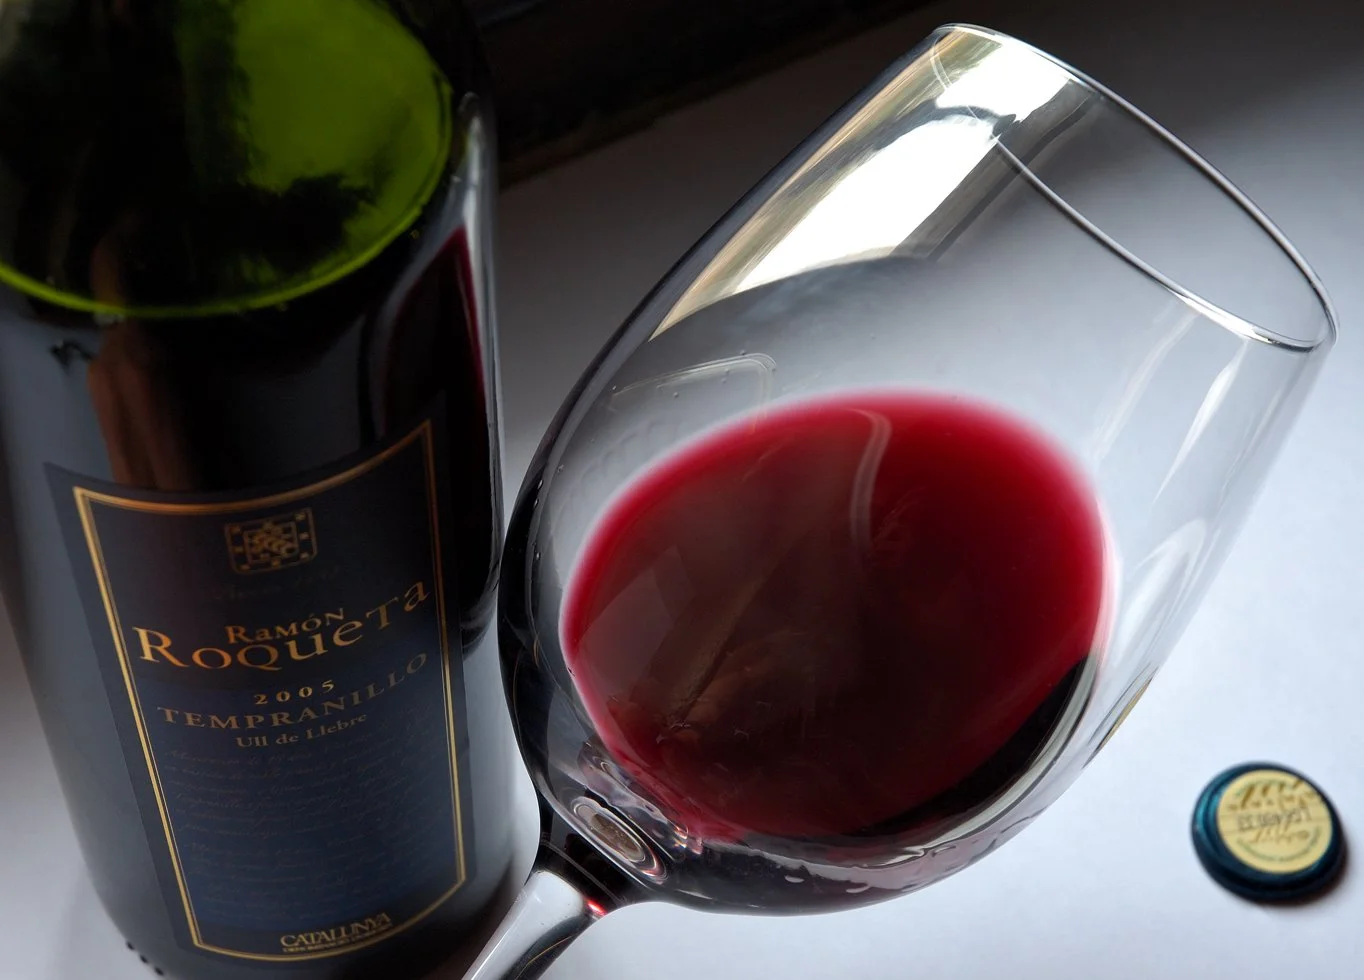 Бокал красного вина, в котором содержится этанол - одно из первых известных человечеству психоактивных веществ, вызывающих привыкание. Фотография с Википедии.